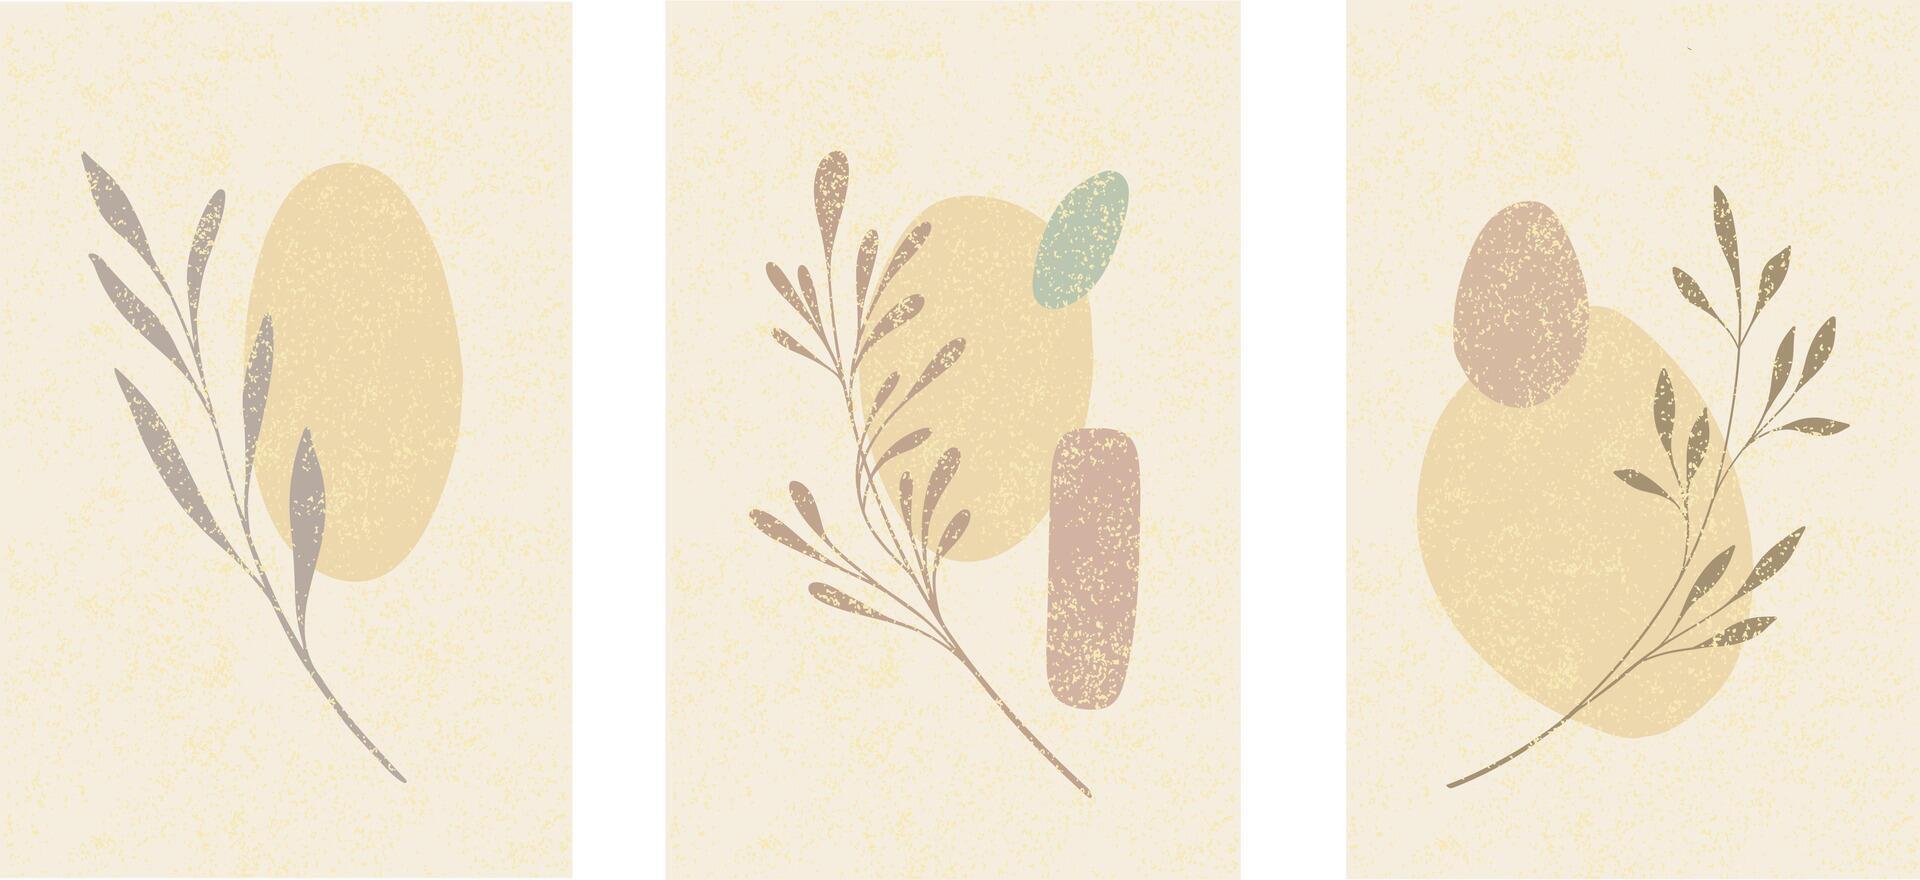 abstract vormen achtergrond bladeren Afdeling plantkunde vector illustratie beige warm kleuren voorjaar vrouw biologisch